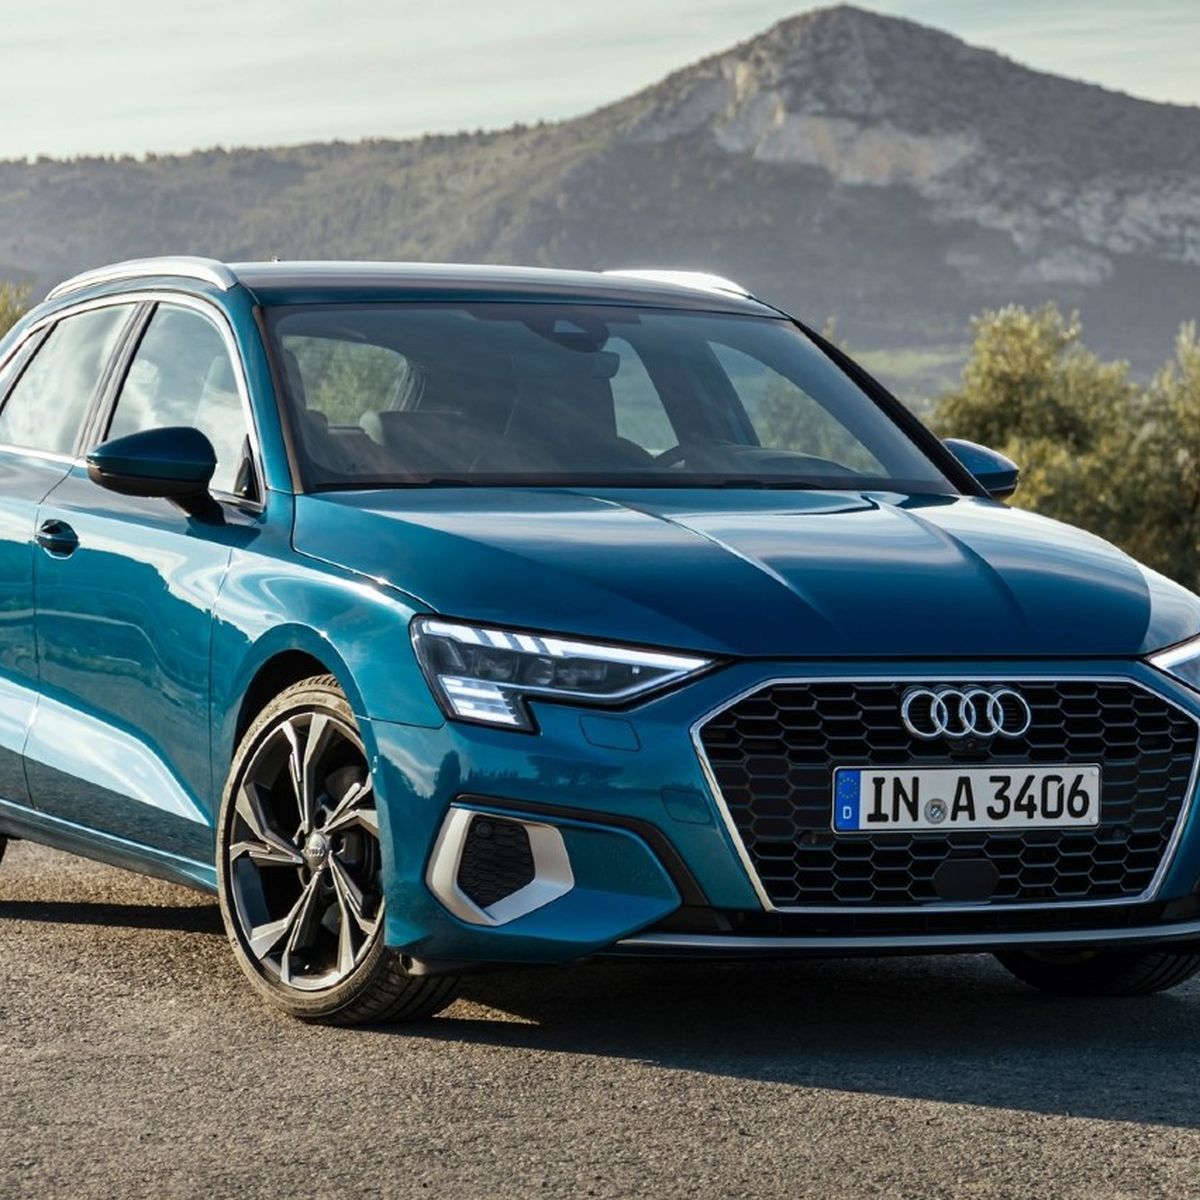 Precio Audi A3: ¿cuánto cuesta en 2022?